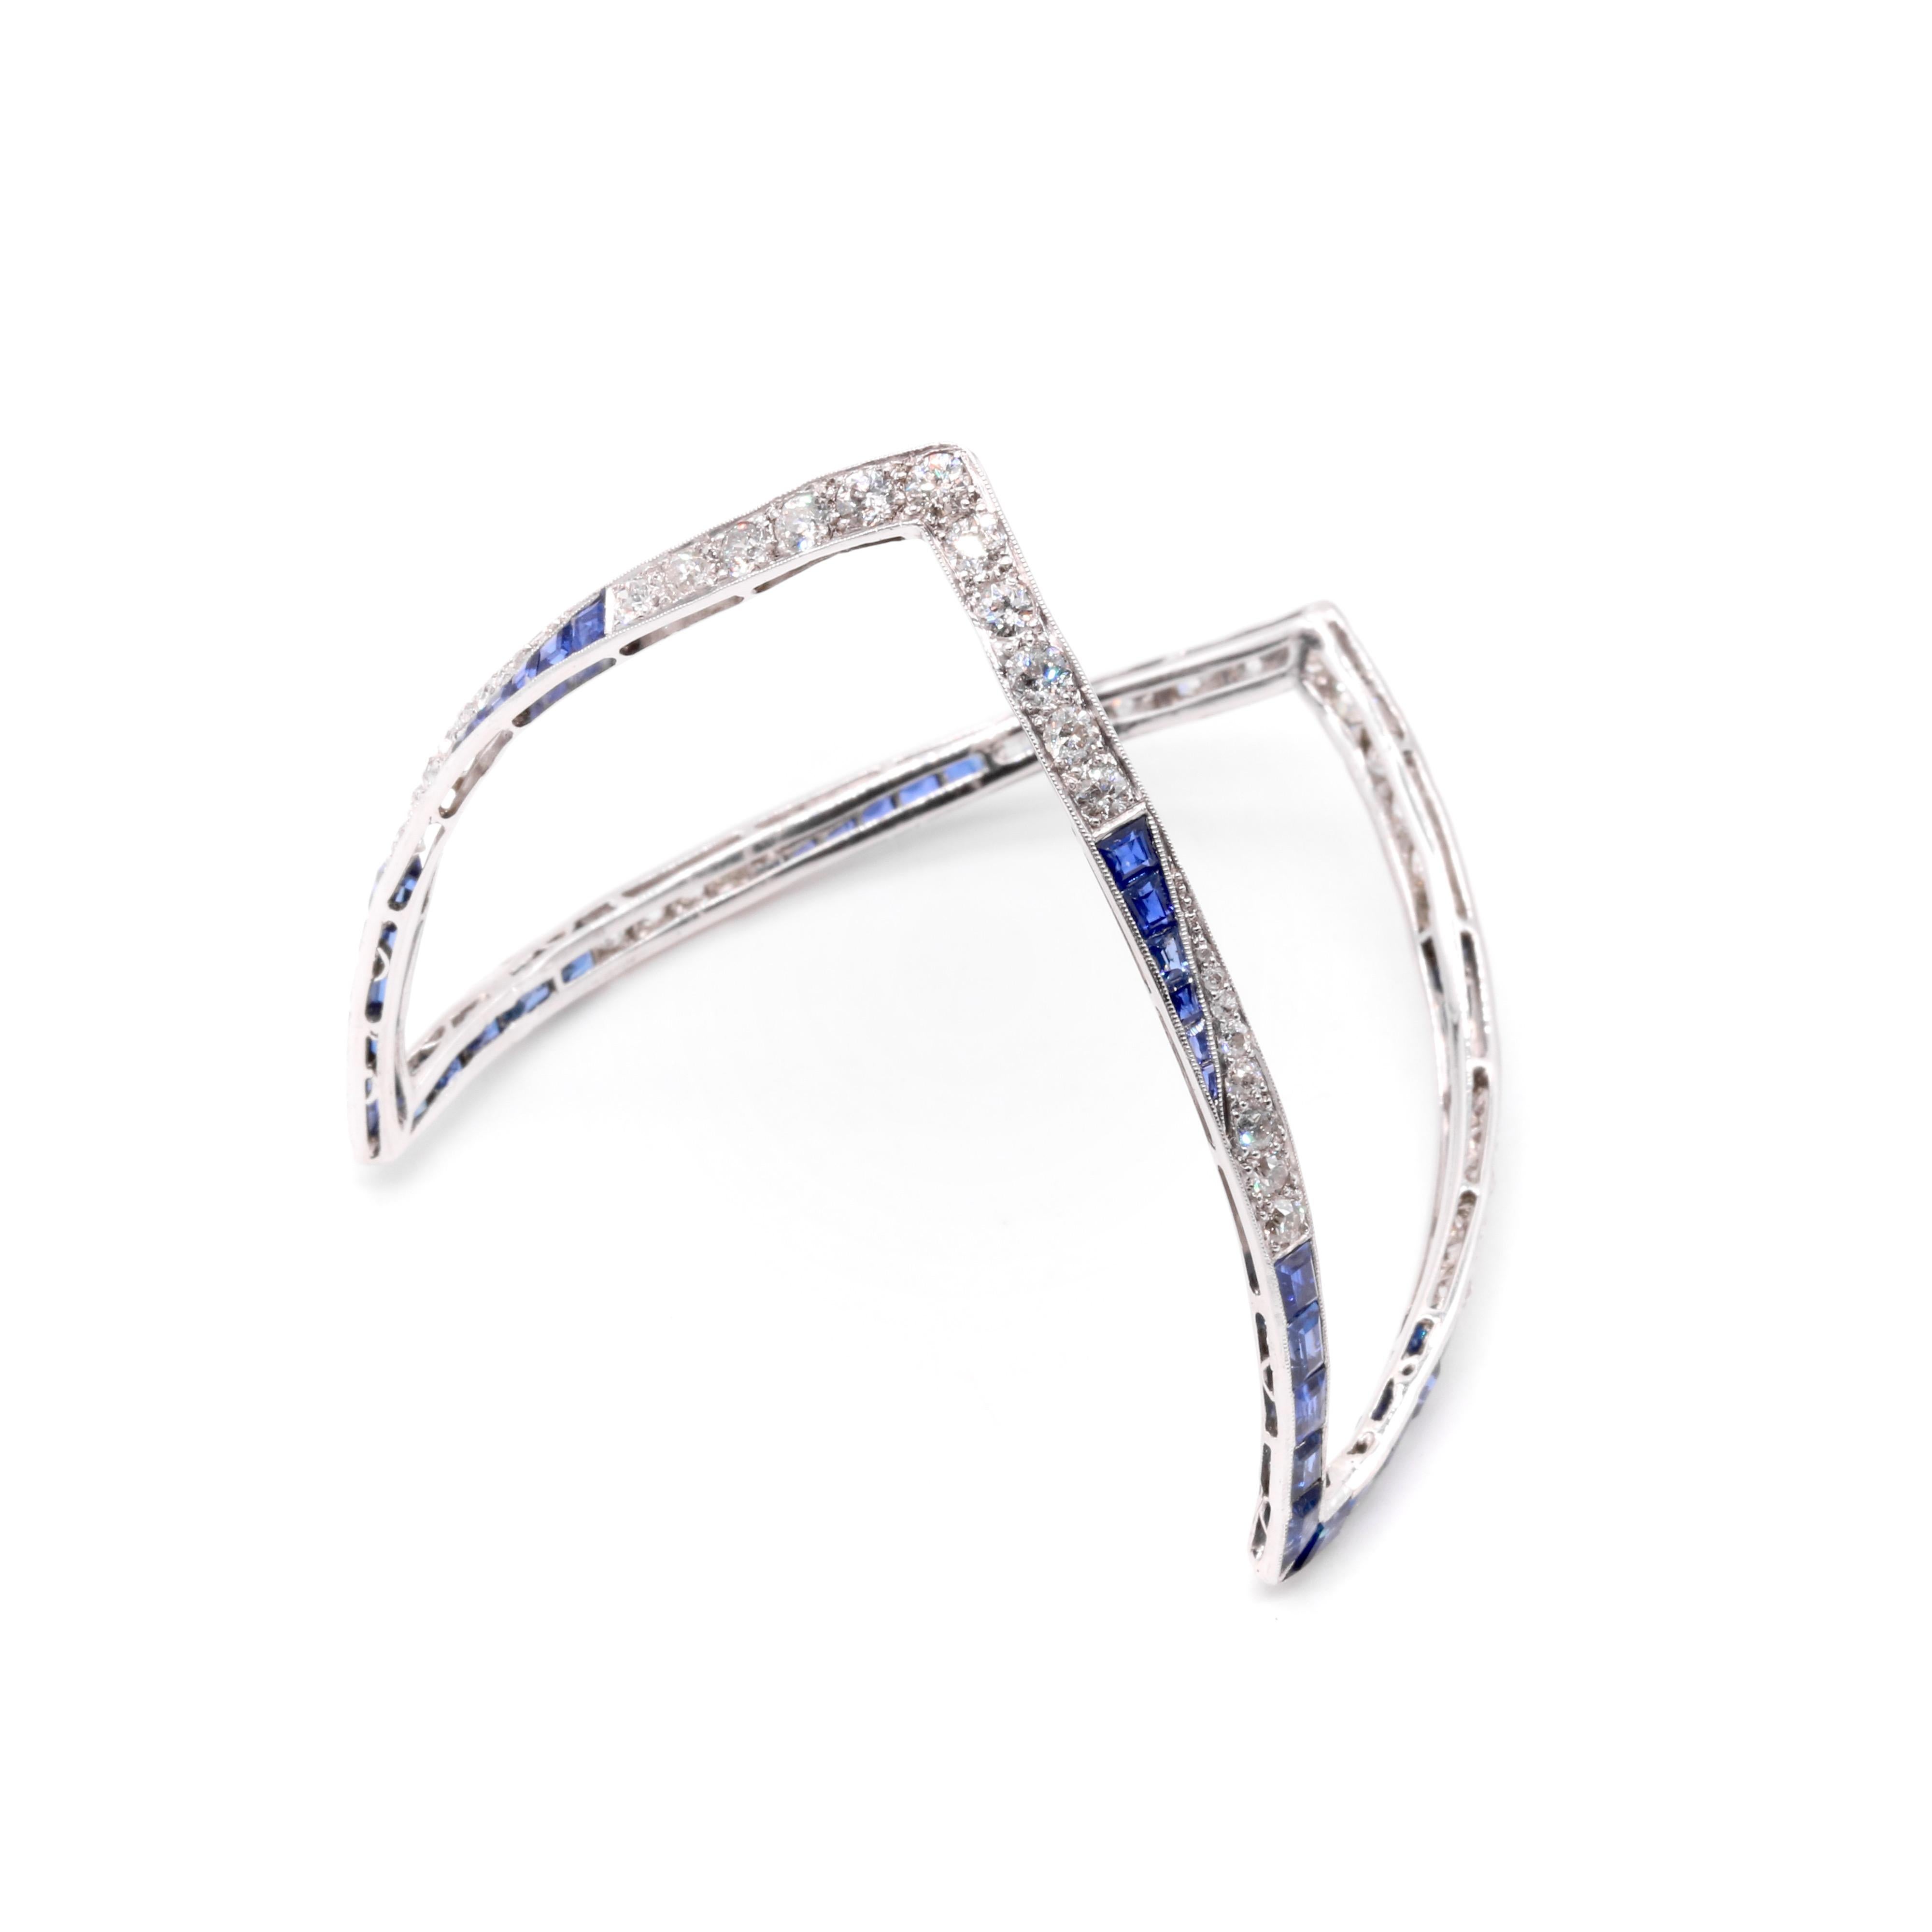 Bracelet Art déco en diamant, saphir et platine, comprenant cinquante-quatre diamants de taille ronde et quarante-quatre saphirs bleus de taille calibre, sertis en platine. 

Cet étonnant bracelet Art déco ne ressemble à rien de ce que j'ai pu voir.